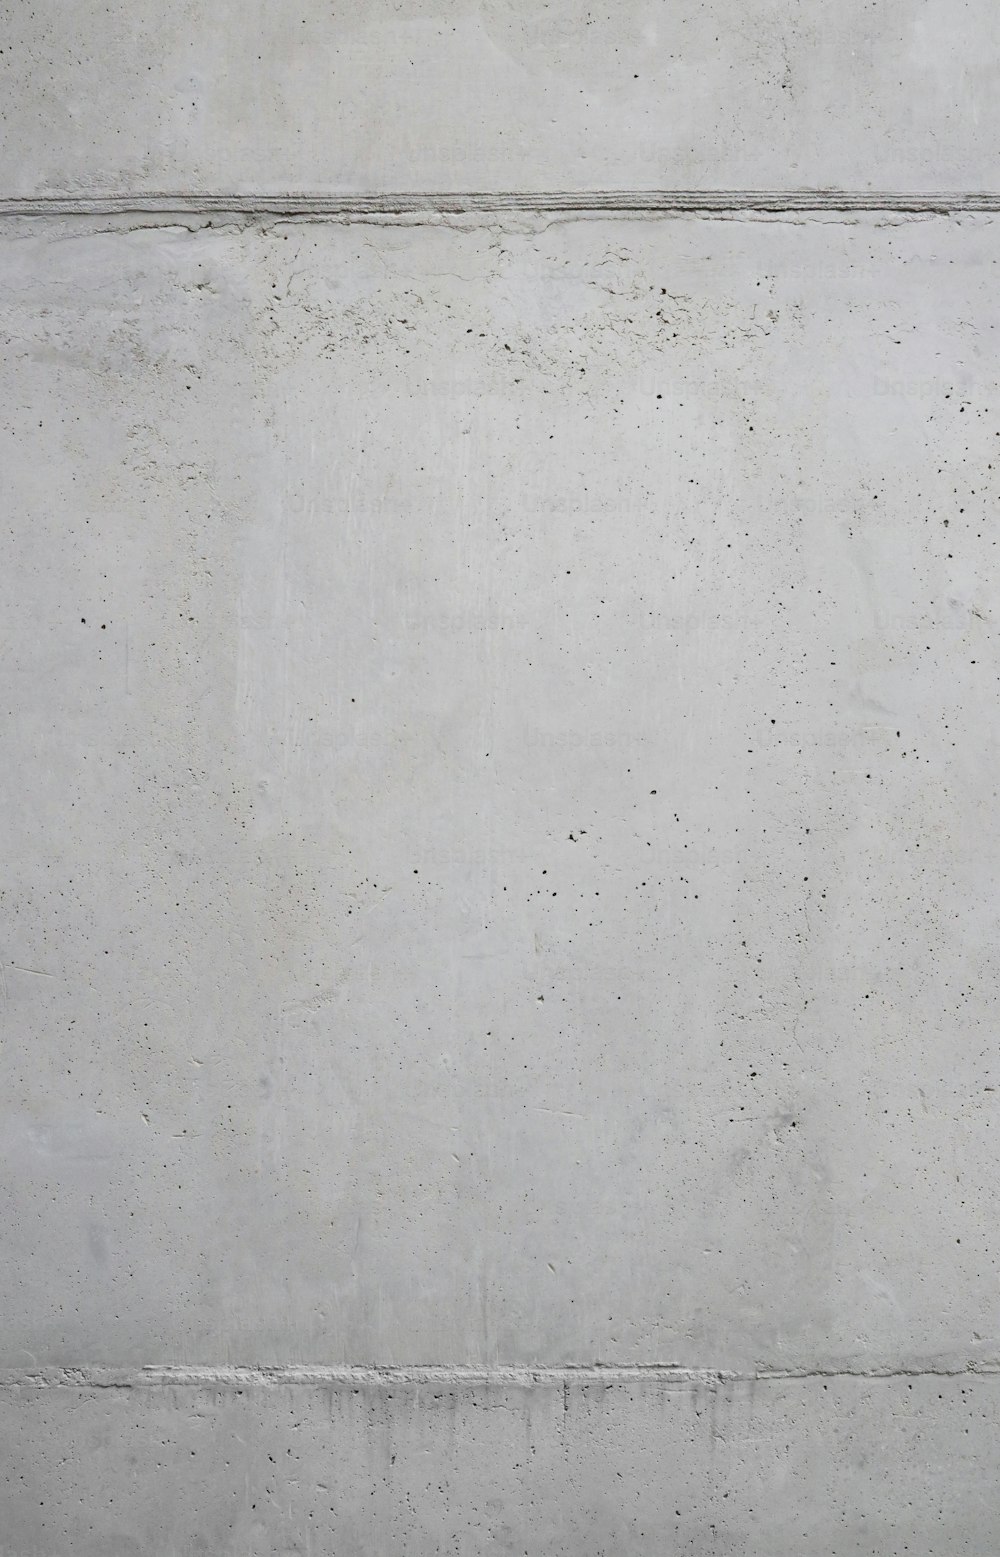 Un homme sur une planche à roulettes au sommet d’un mur de ciment